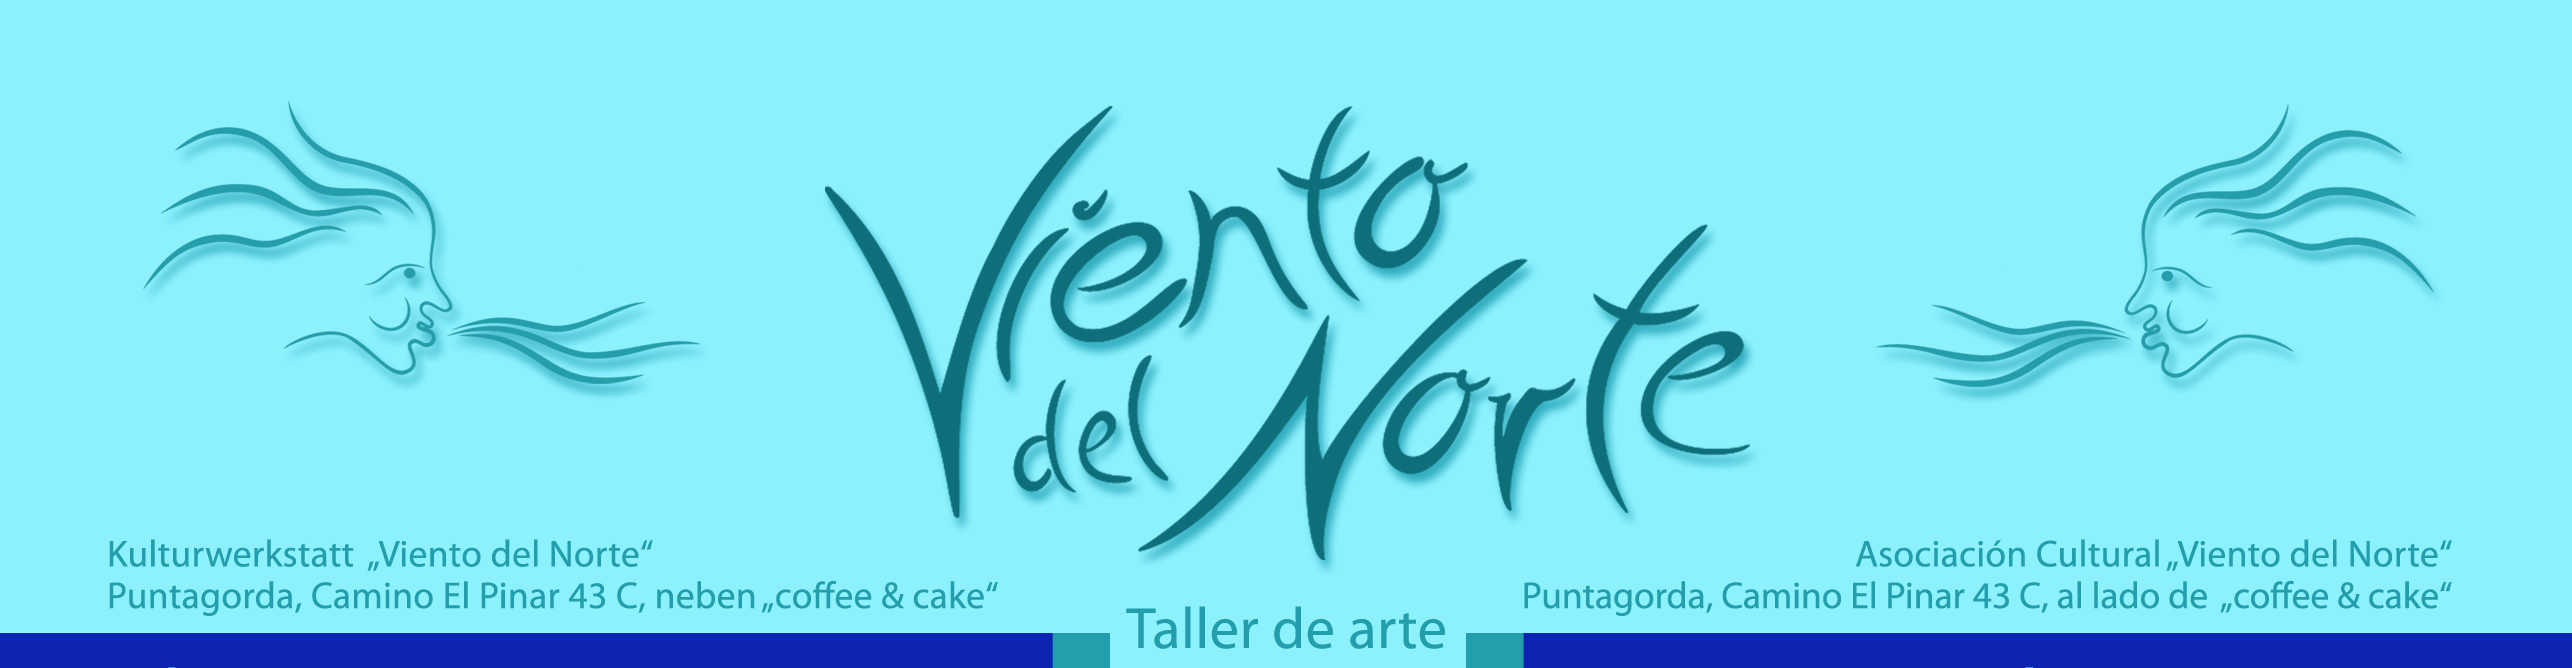 Kulturwerkstatt Viento del Norte Puntagorda